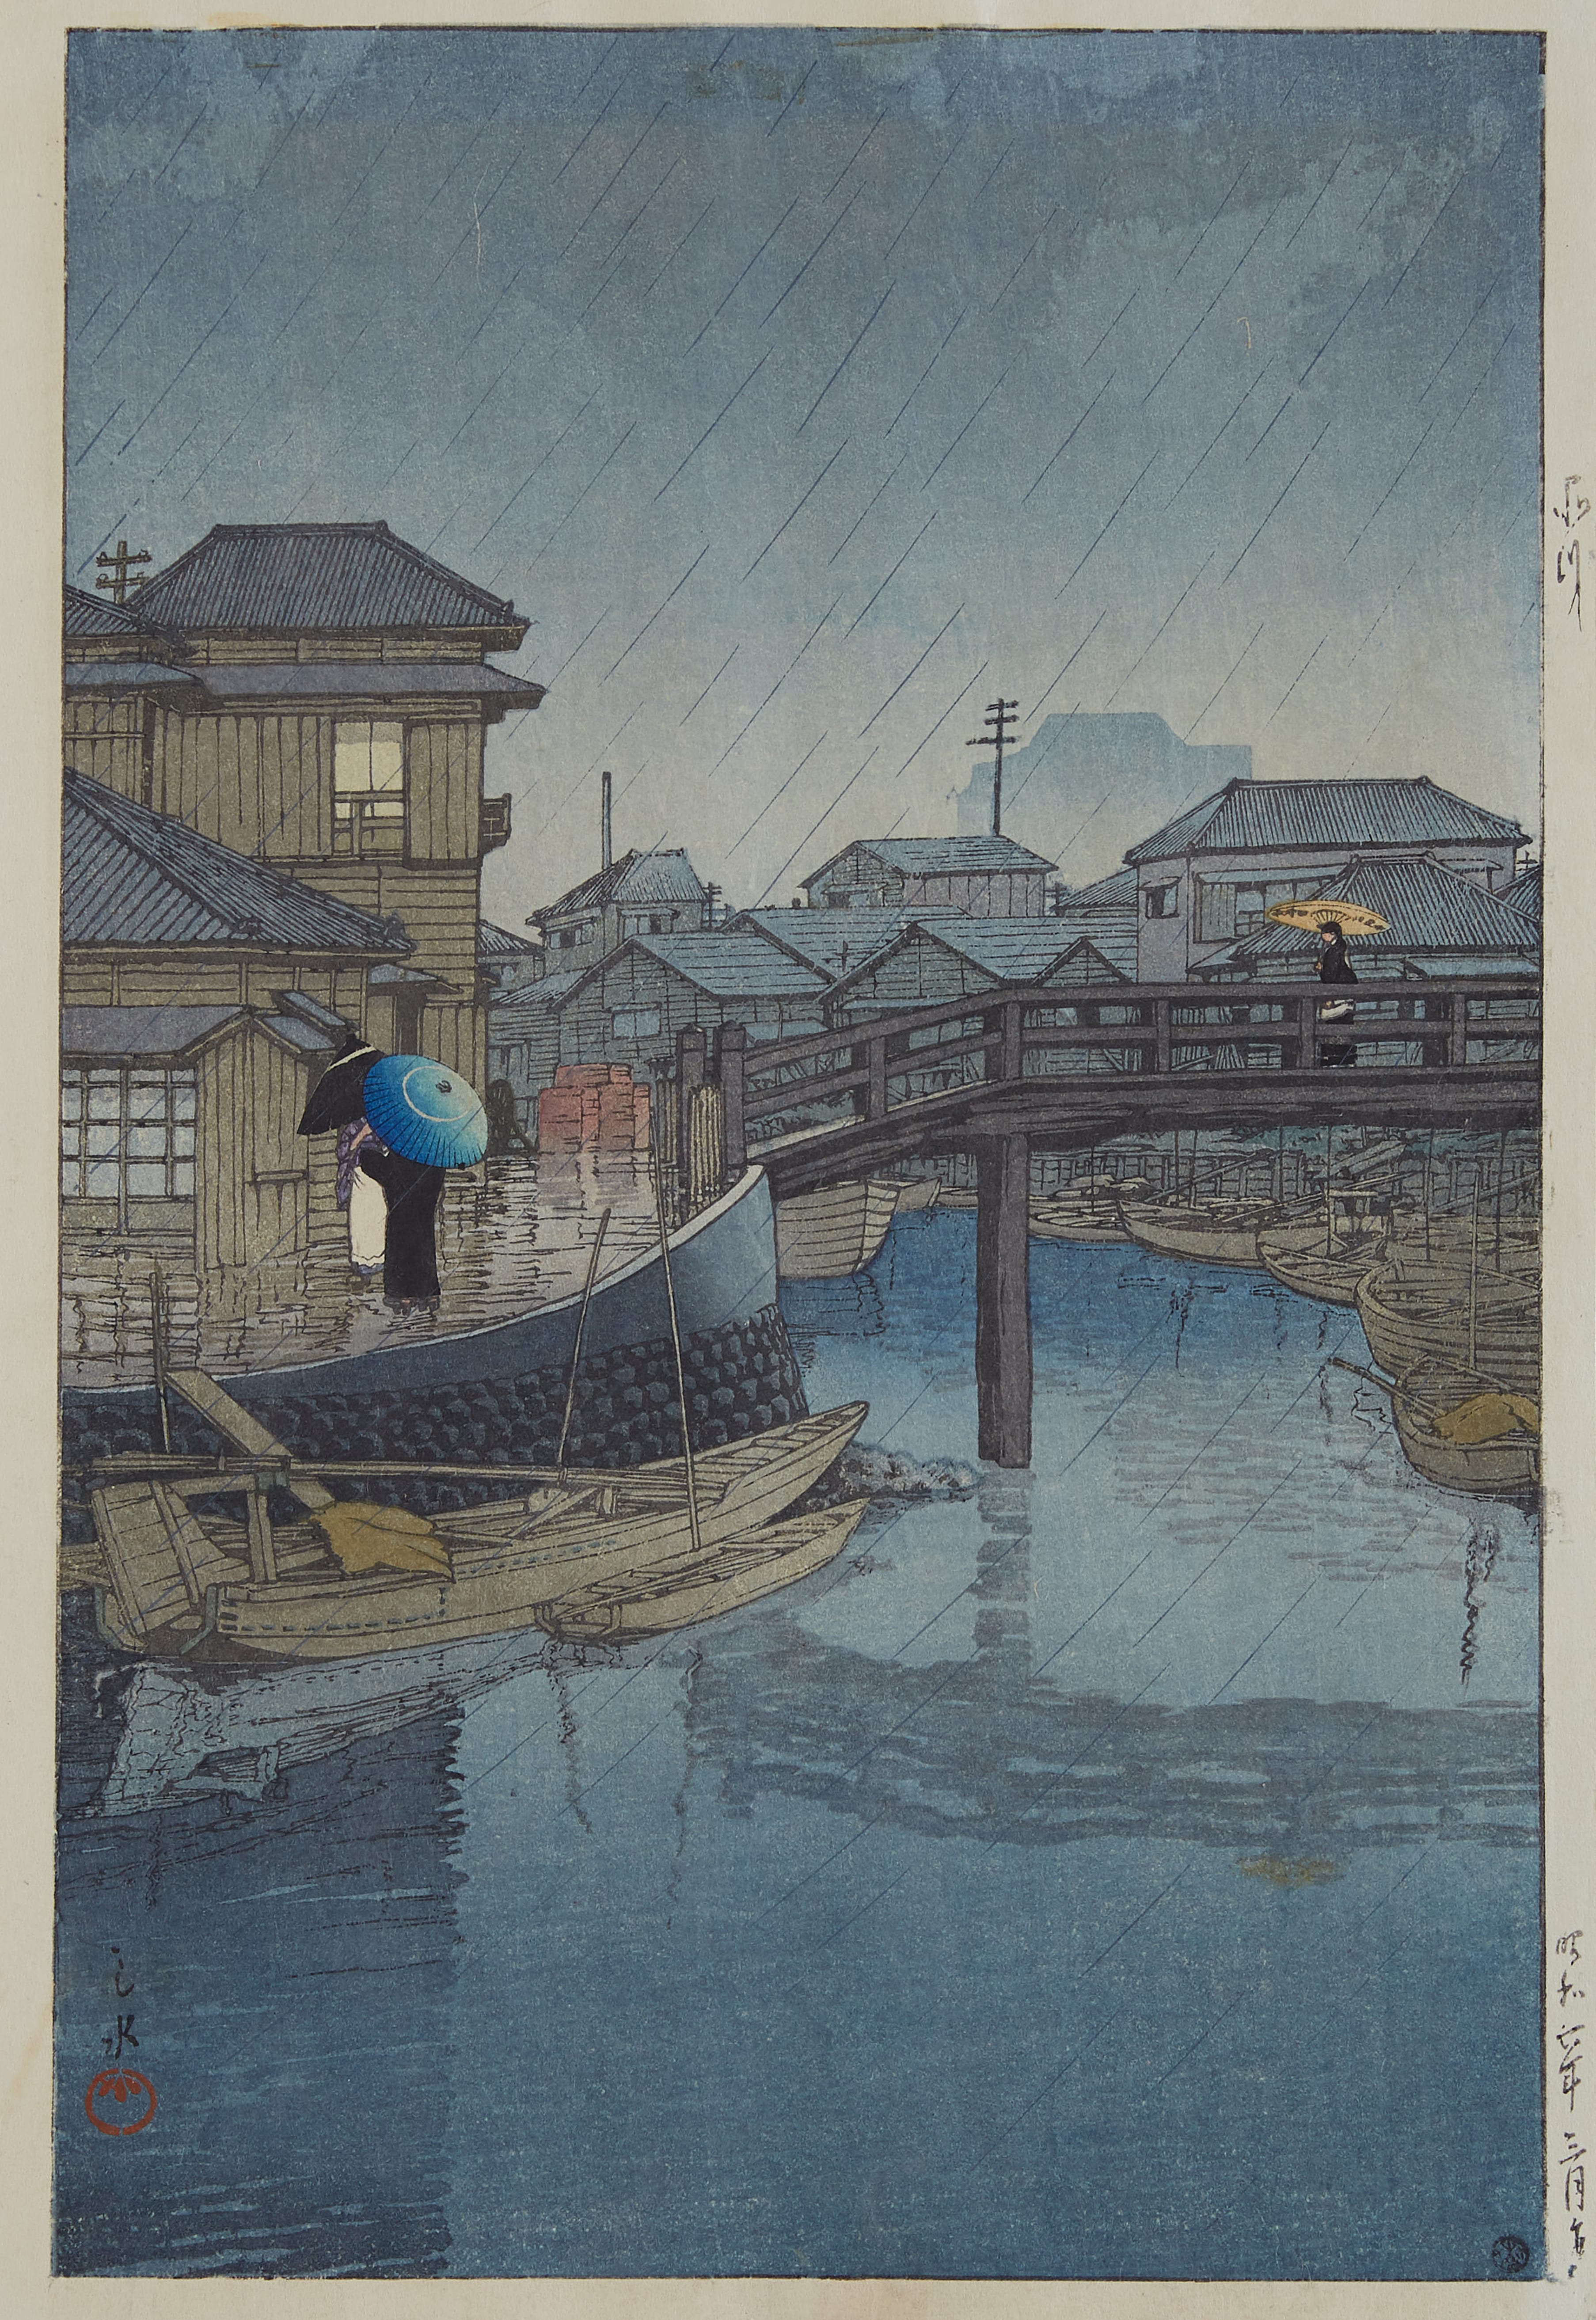 Lot 090: Kawase Hasui Woodblock Print of Rainy River